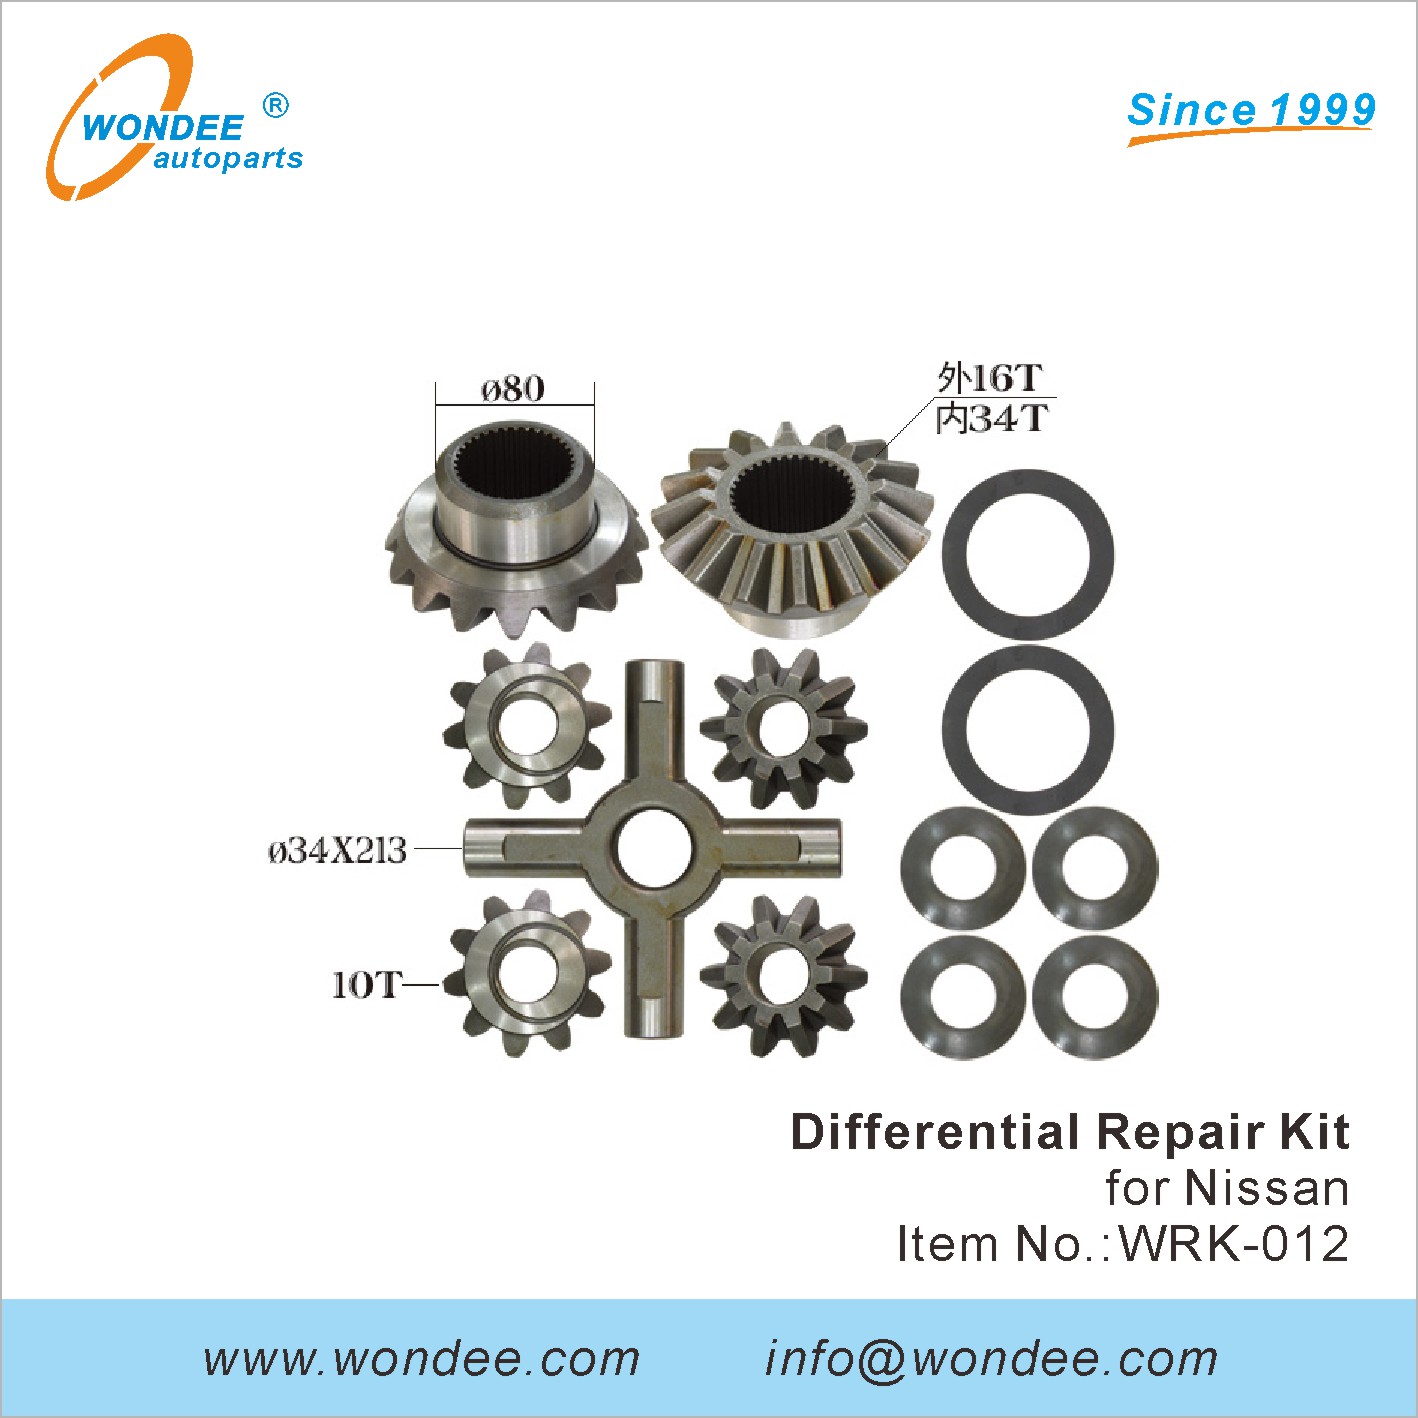 WONDEE differential repair kit (12)